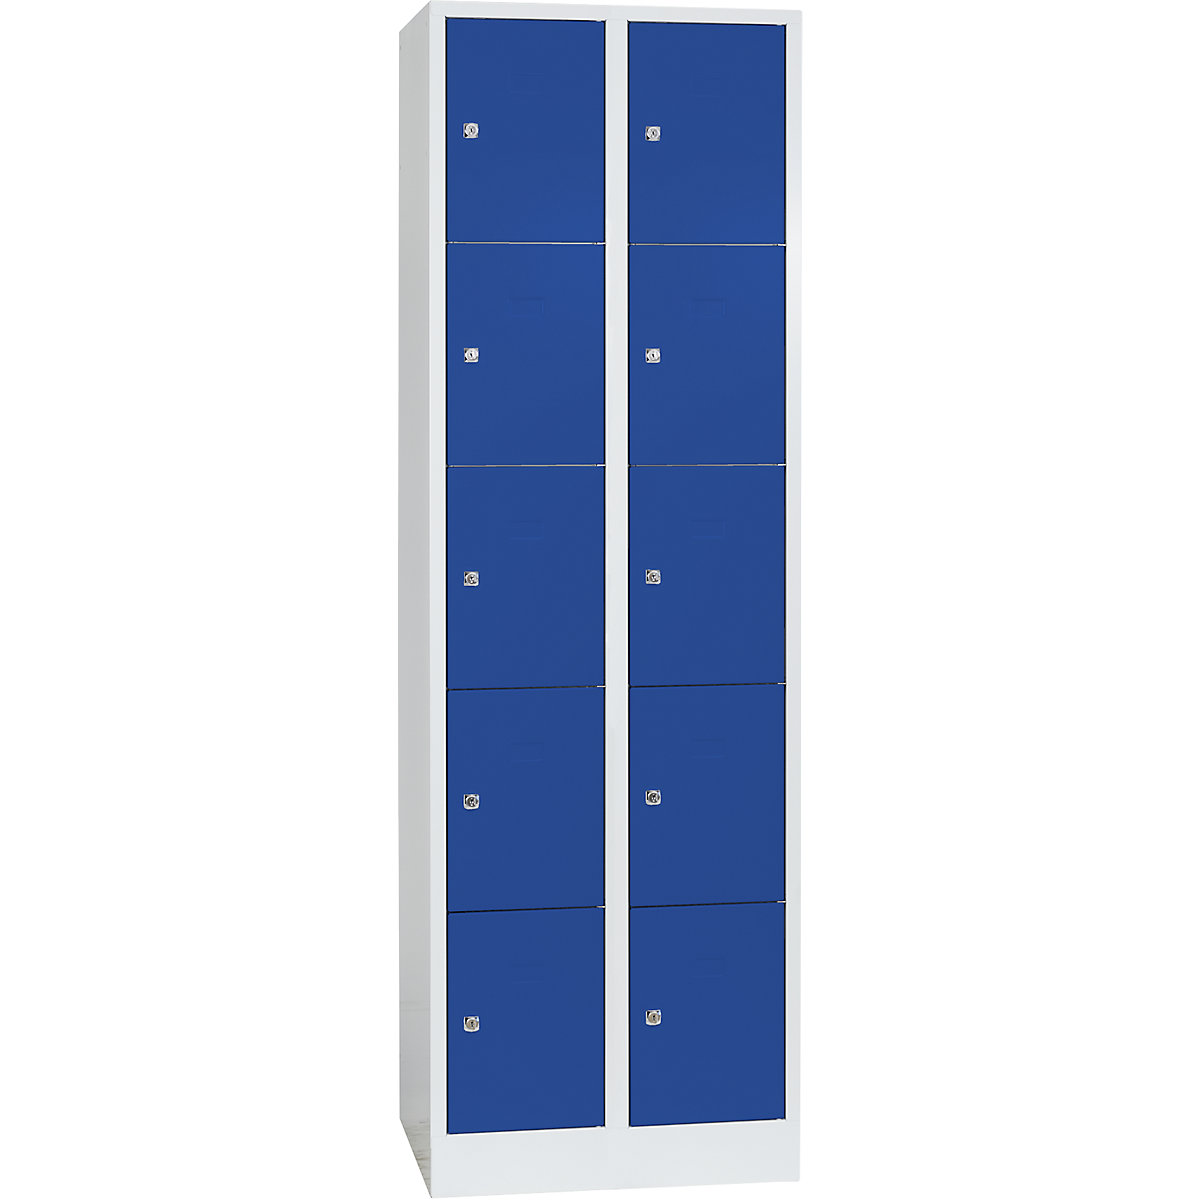 Wolf – Vestiaire modulaire à casiers verrouillables, 10 casiers, largeur 300 mm, bleu gentiane / gris clair